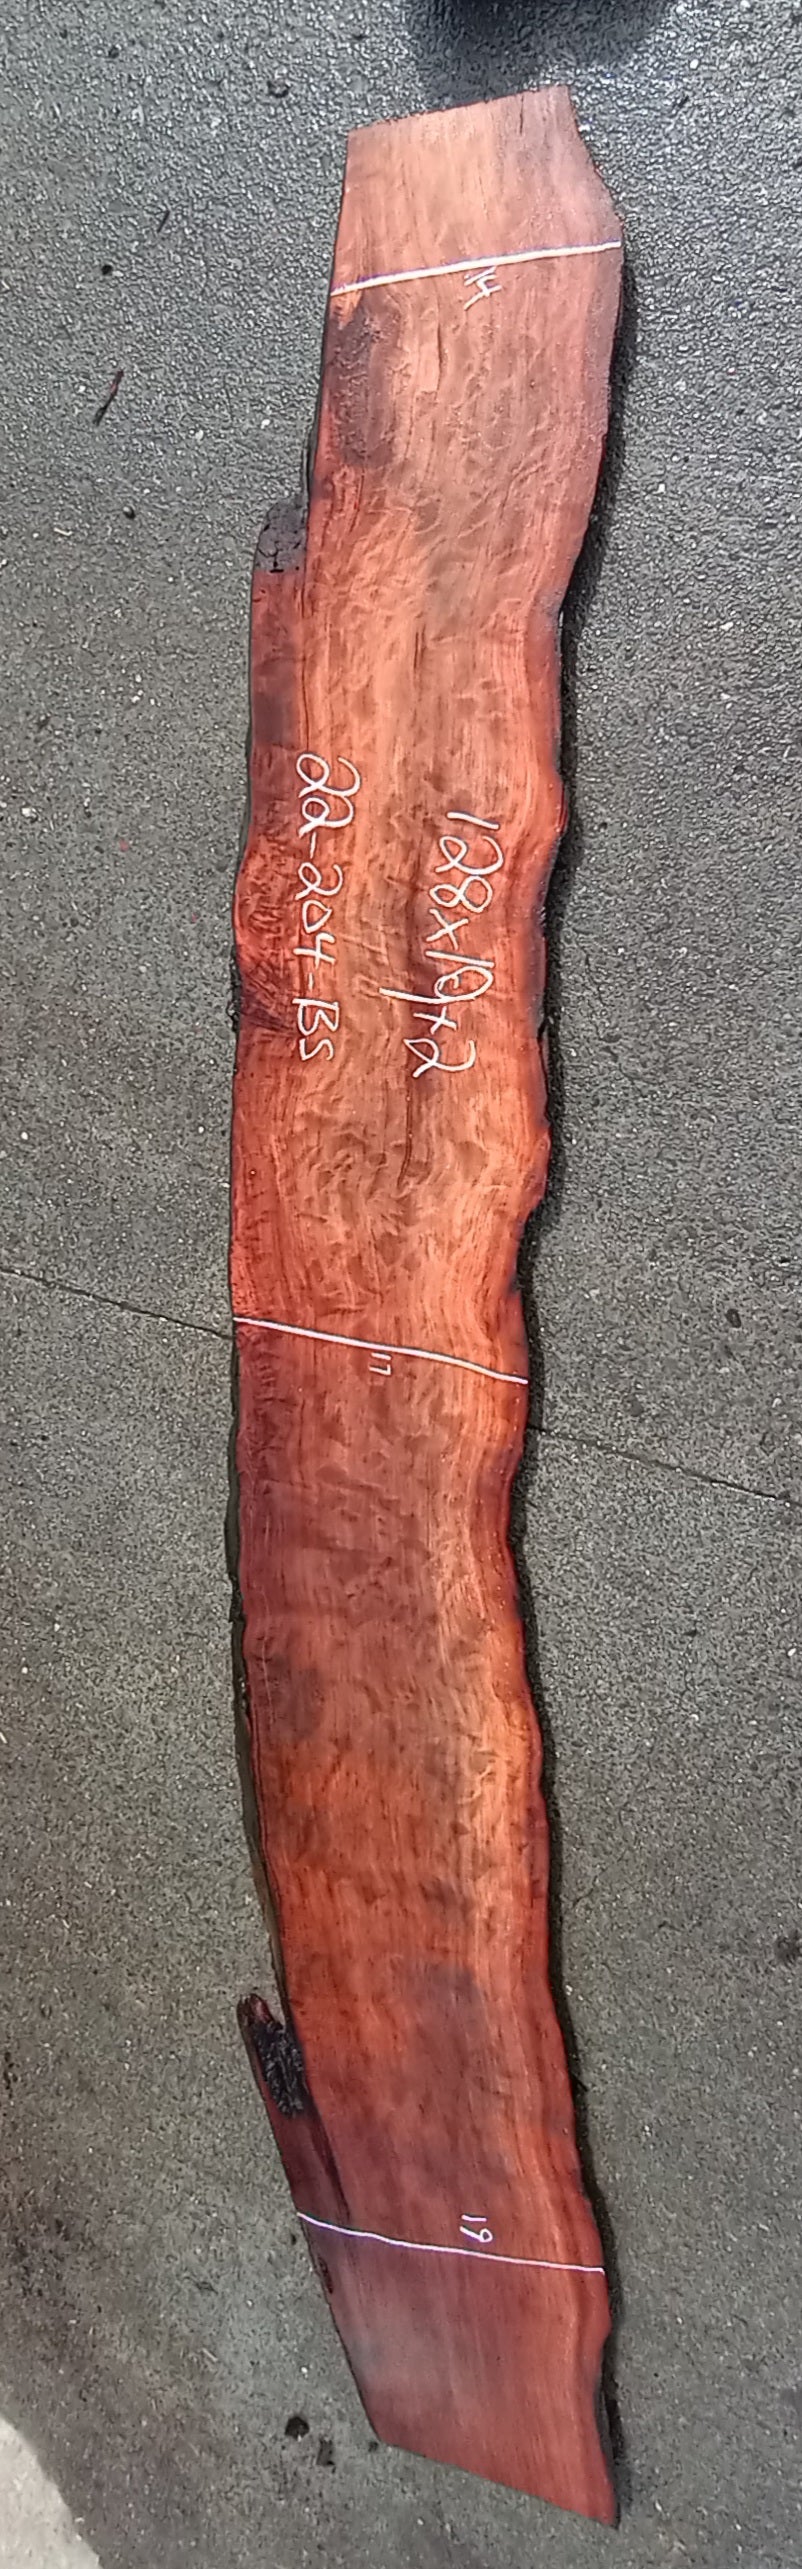 Guitar billet | river table | quilted redwood | DIY wood | 22-204